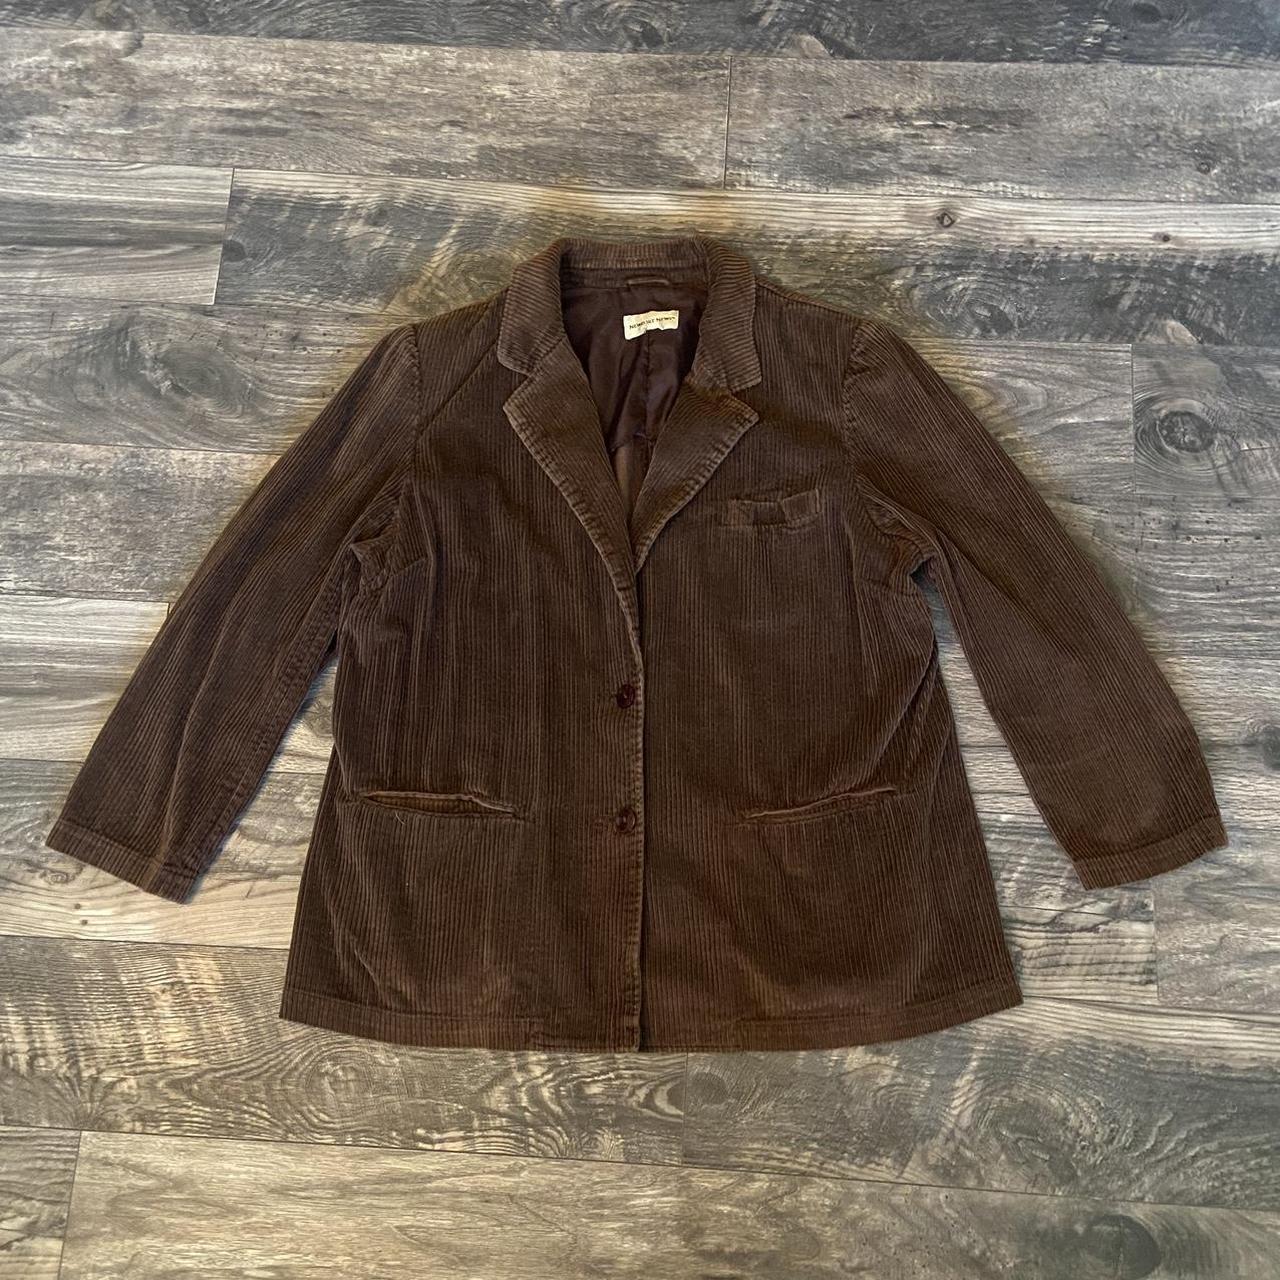 Brown Newport News Corduroy Coat/Blazer Size: Fits... - Depop